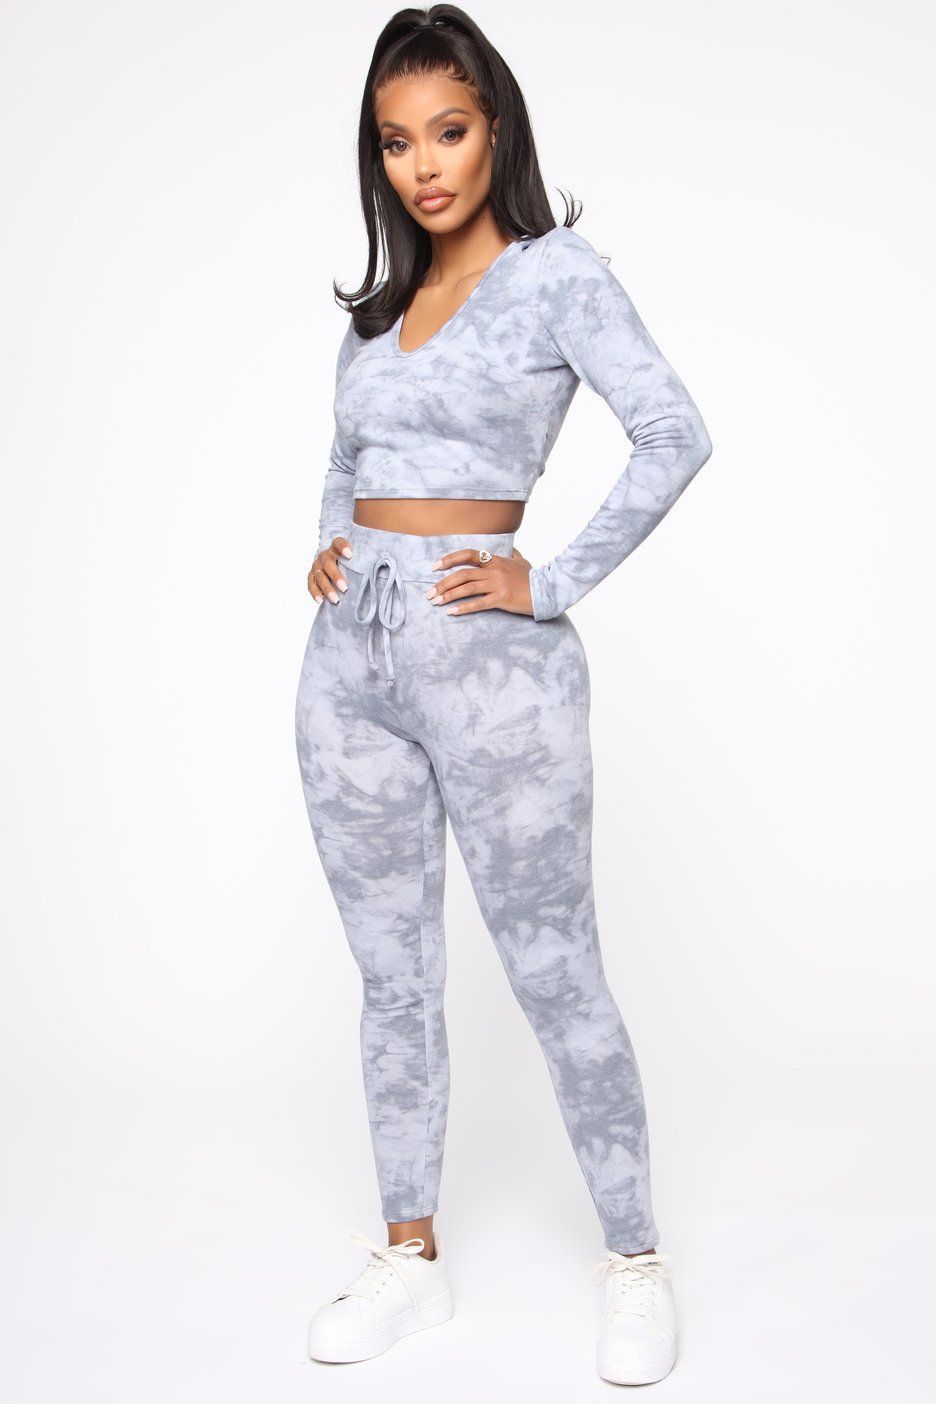 Halfword Tie Dye 2 Piece Shorts Set for Women Short Sleeve Outfits Loungewear Sweatsuit 